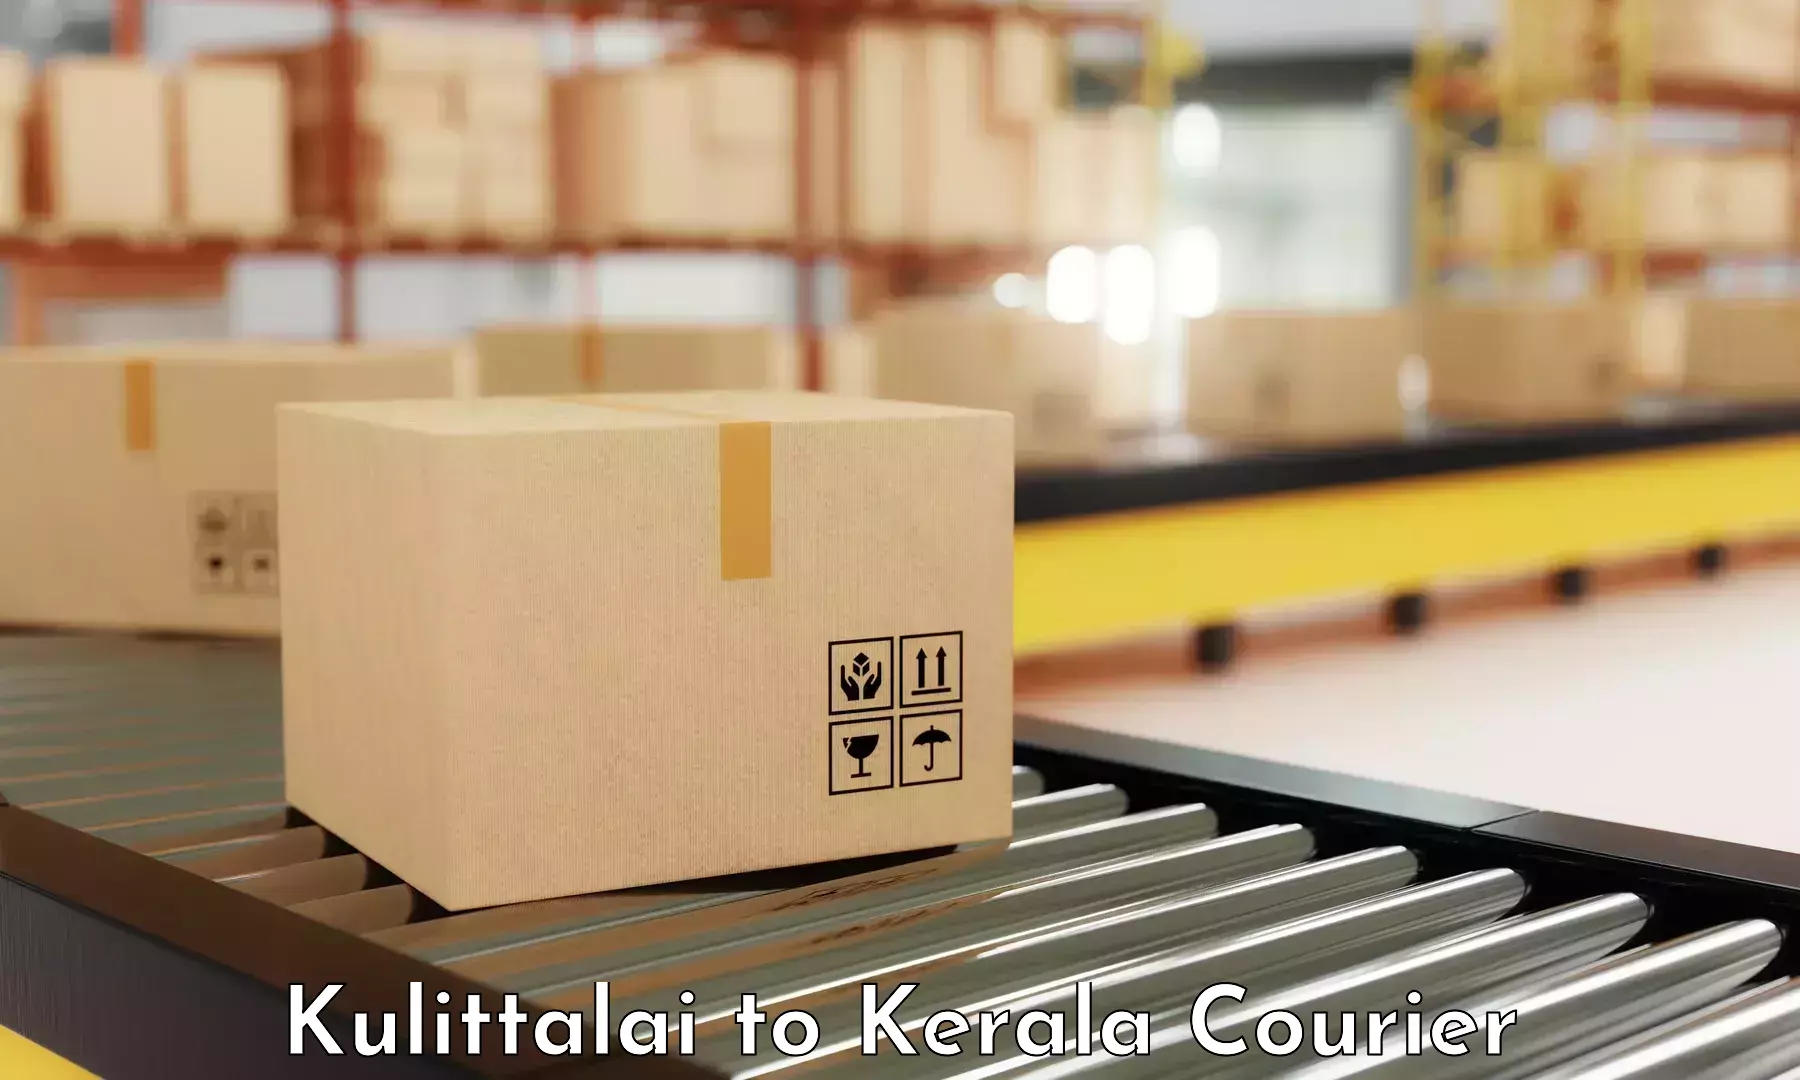 Automated shipping processes Kulittalai to Chiramanangad